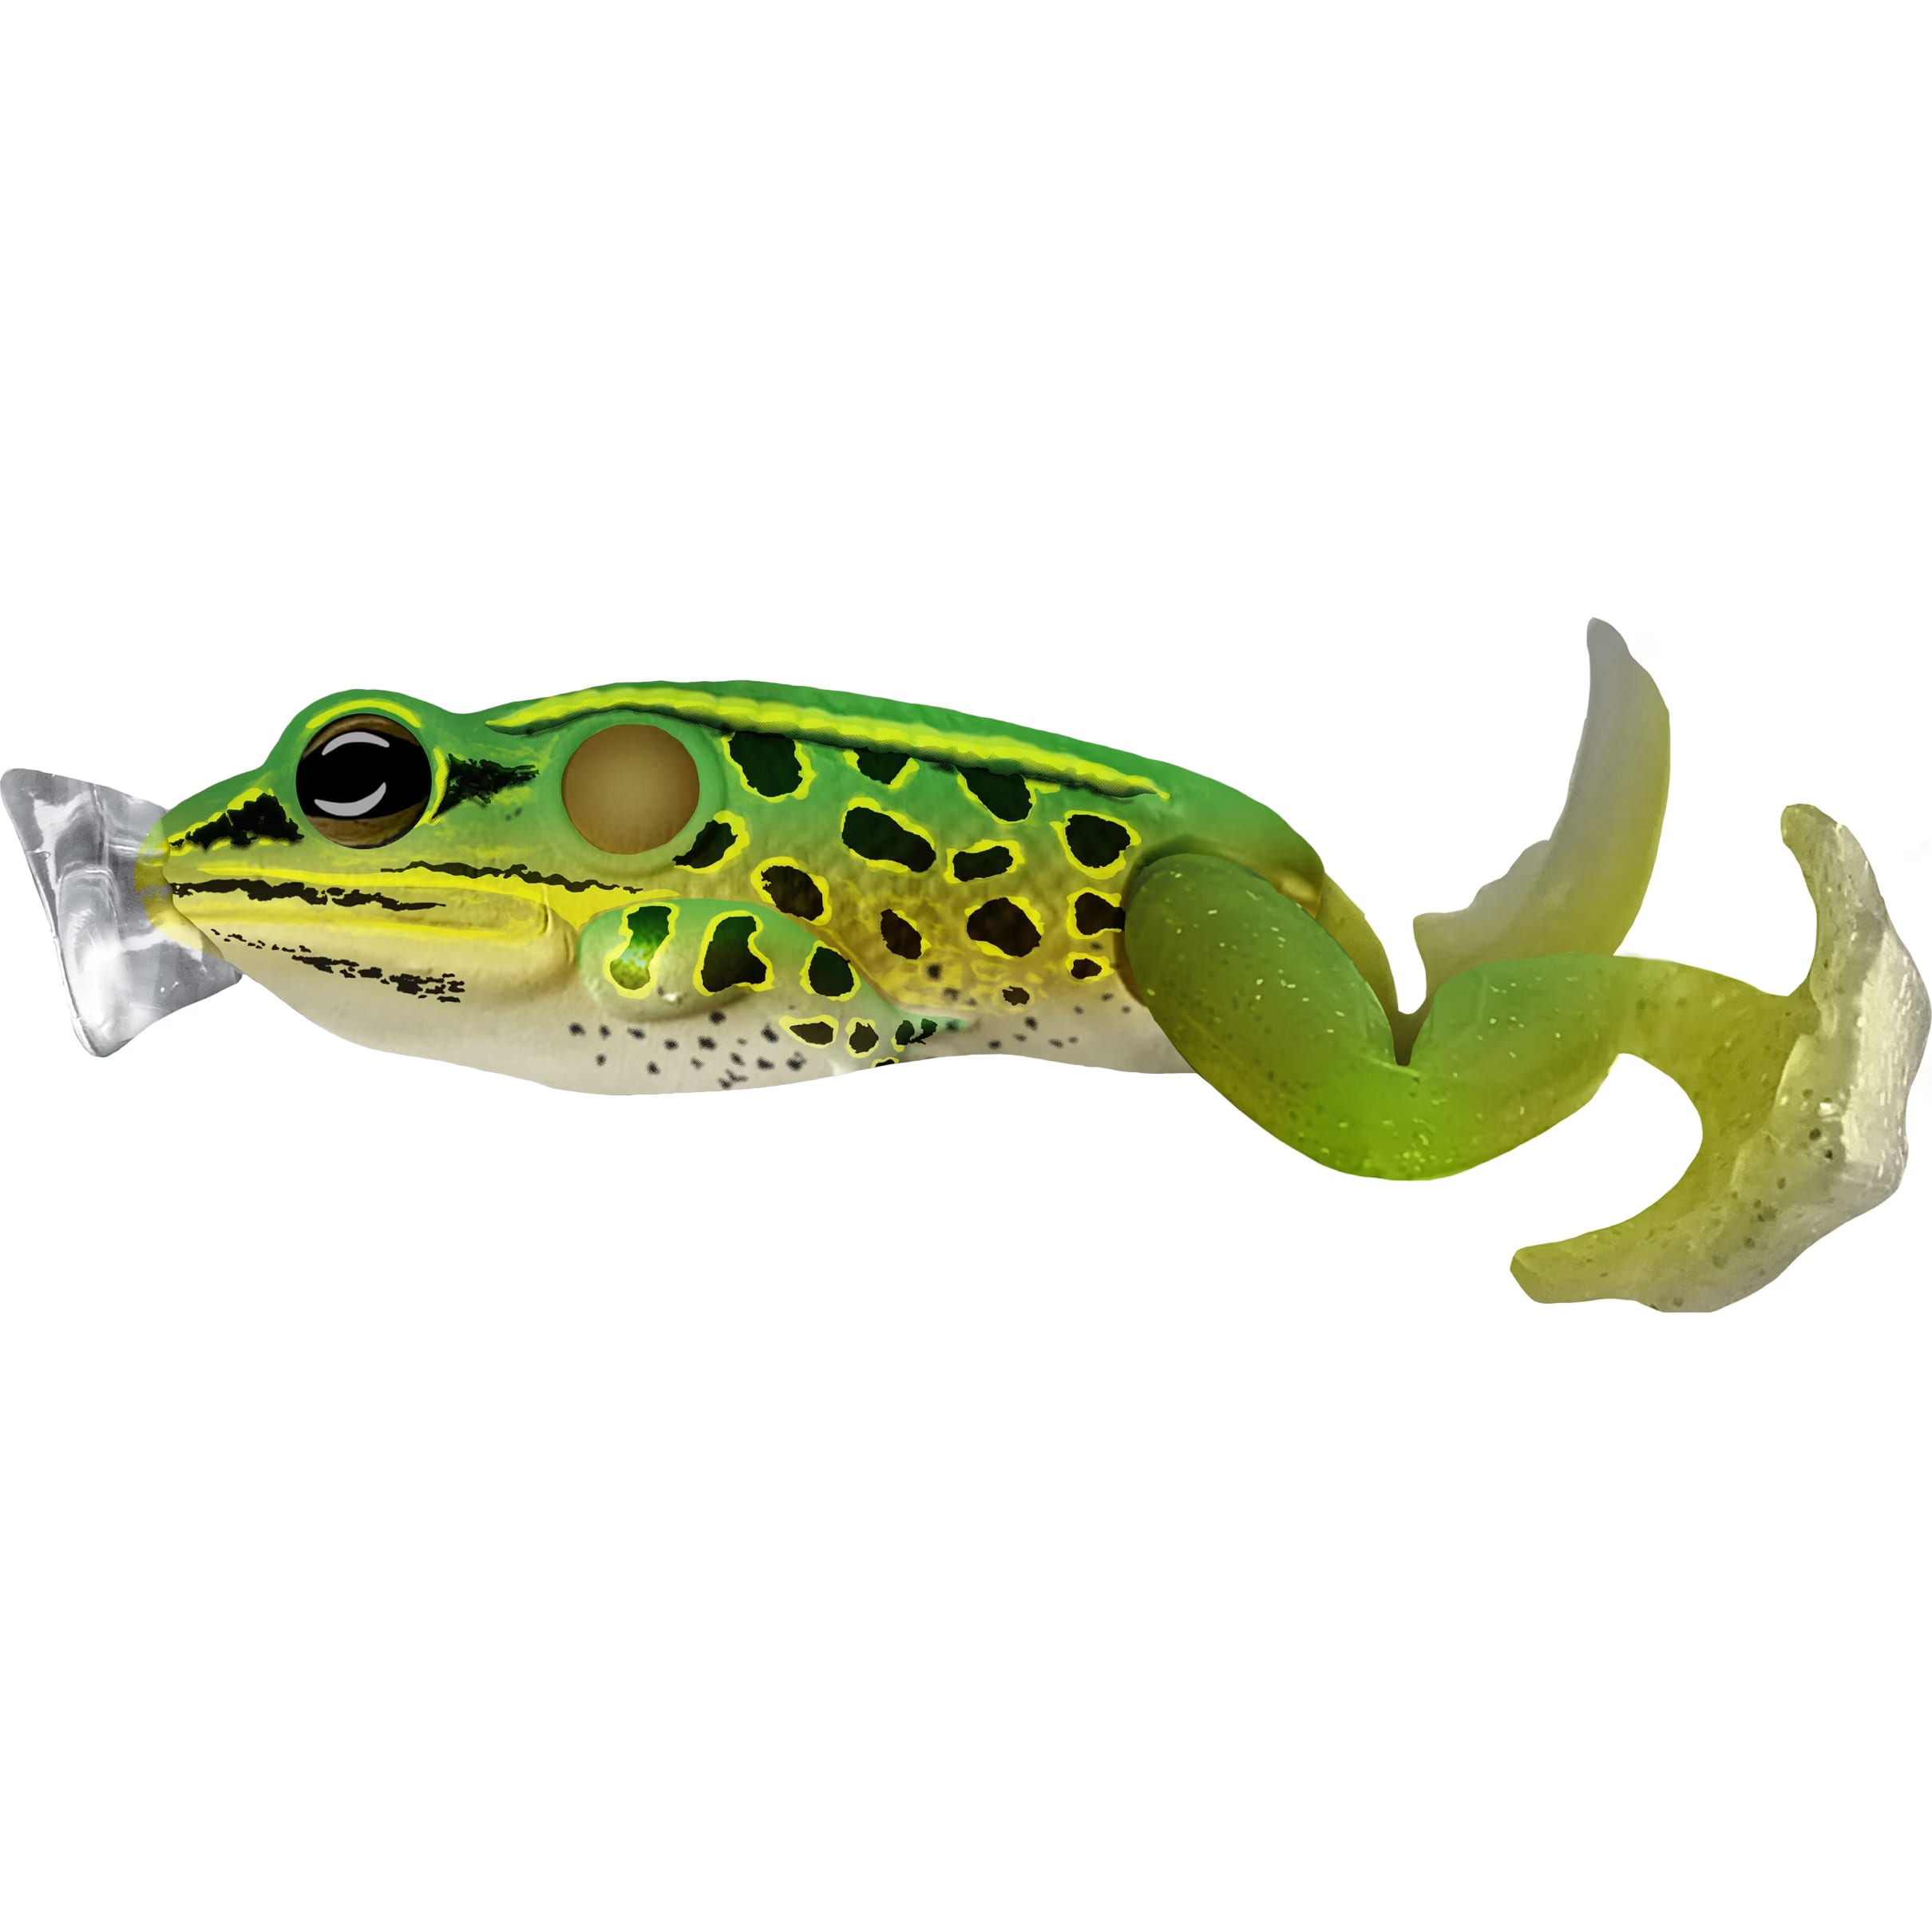 LIVETARGET Ultimate Frog Popper - Cabelas - LIVETARGET - Topwater